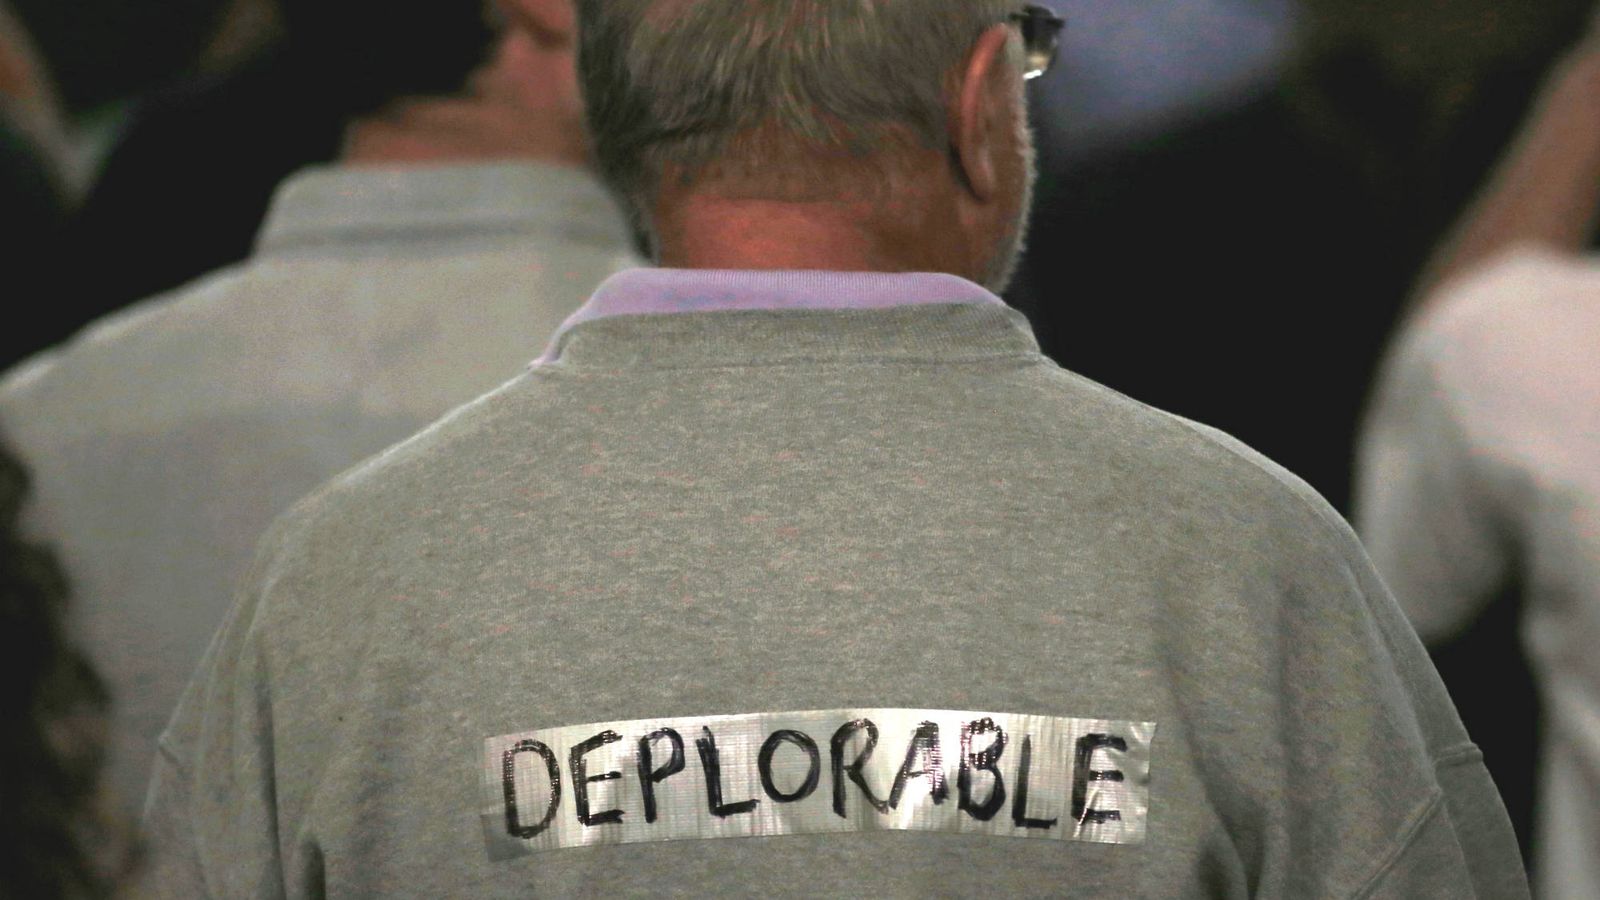 Foto: Un partidario de Donald Trump con un cartel que dice "deplorable", una referencia al adjetivo despectivo utilizado por Hillary Clinton contra los votantes de su adversario (Reuters)